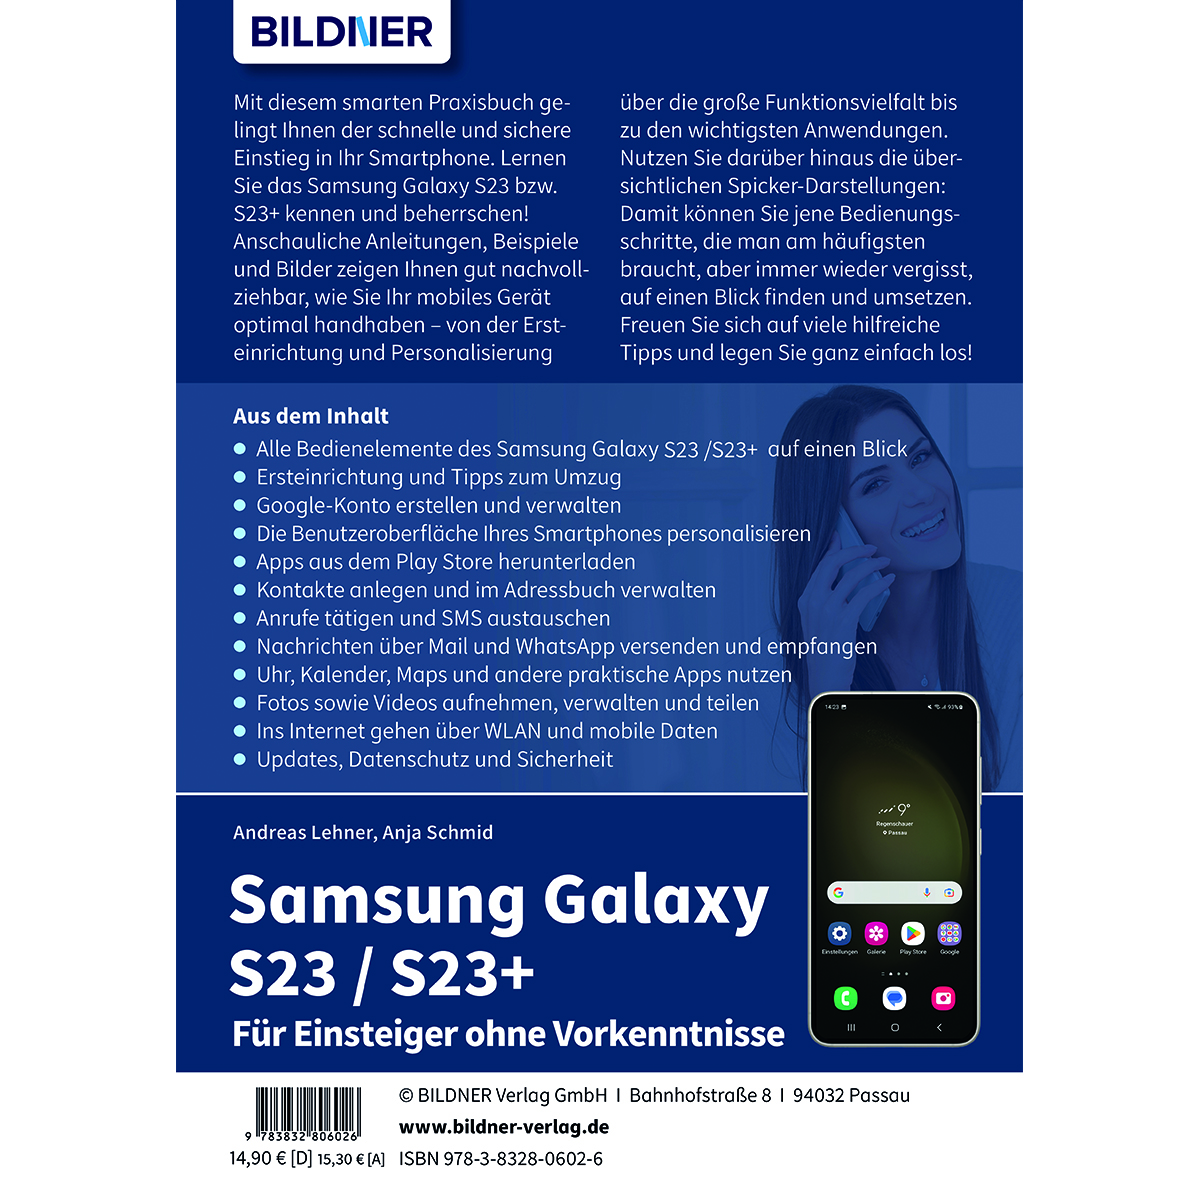 Samsung Galaxy S23/S23+ – Für Einsteiger ohne Vorkenntnisse